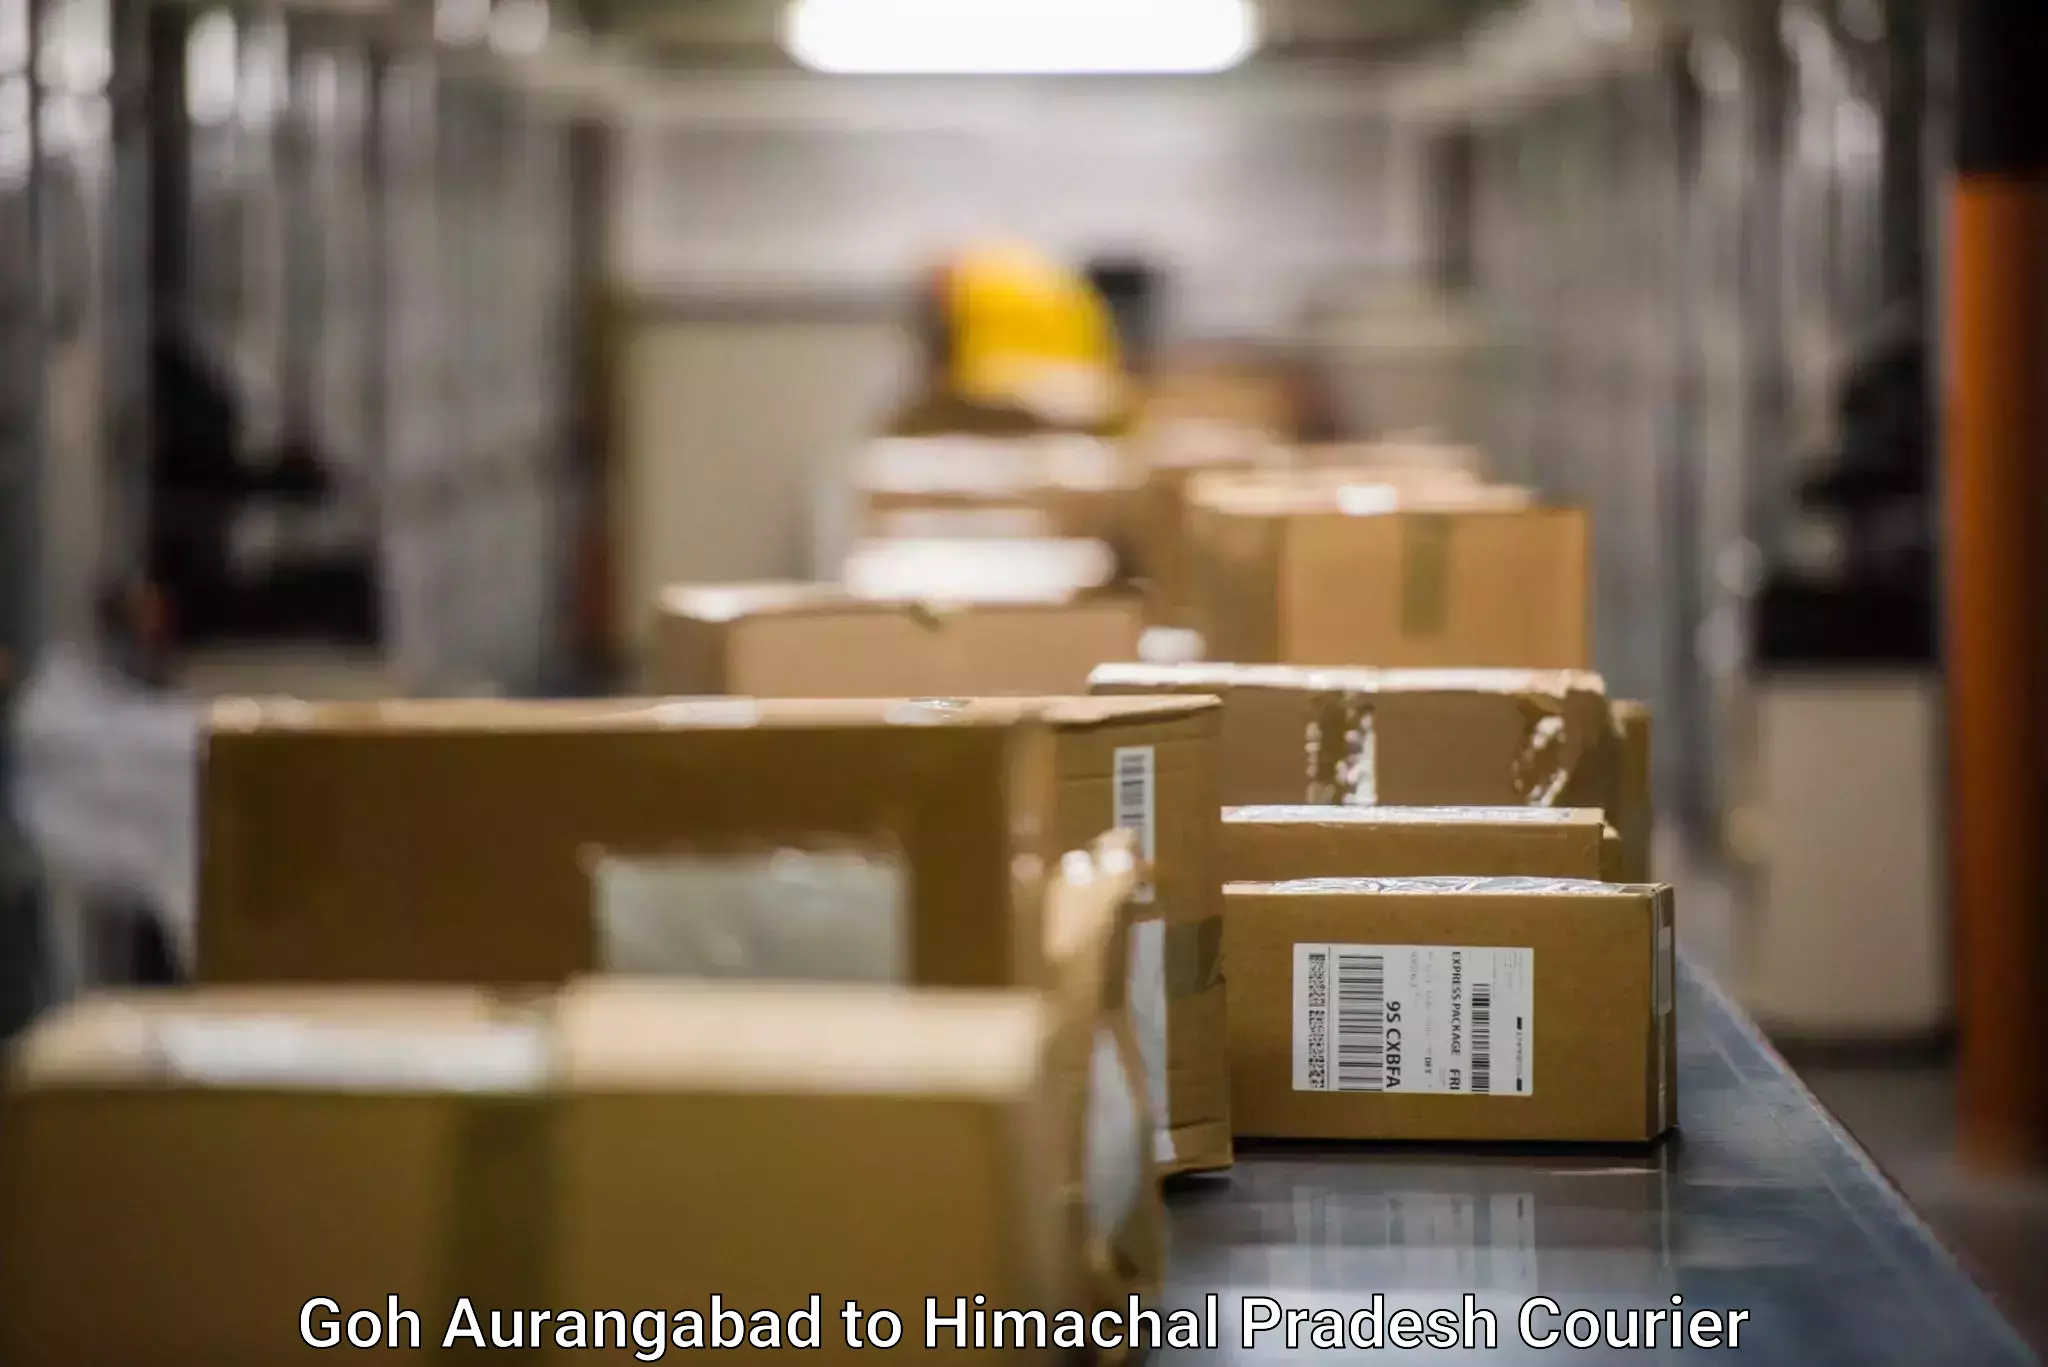 Seamless shipping experience Goh Aurangabad to Joginder Nagar